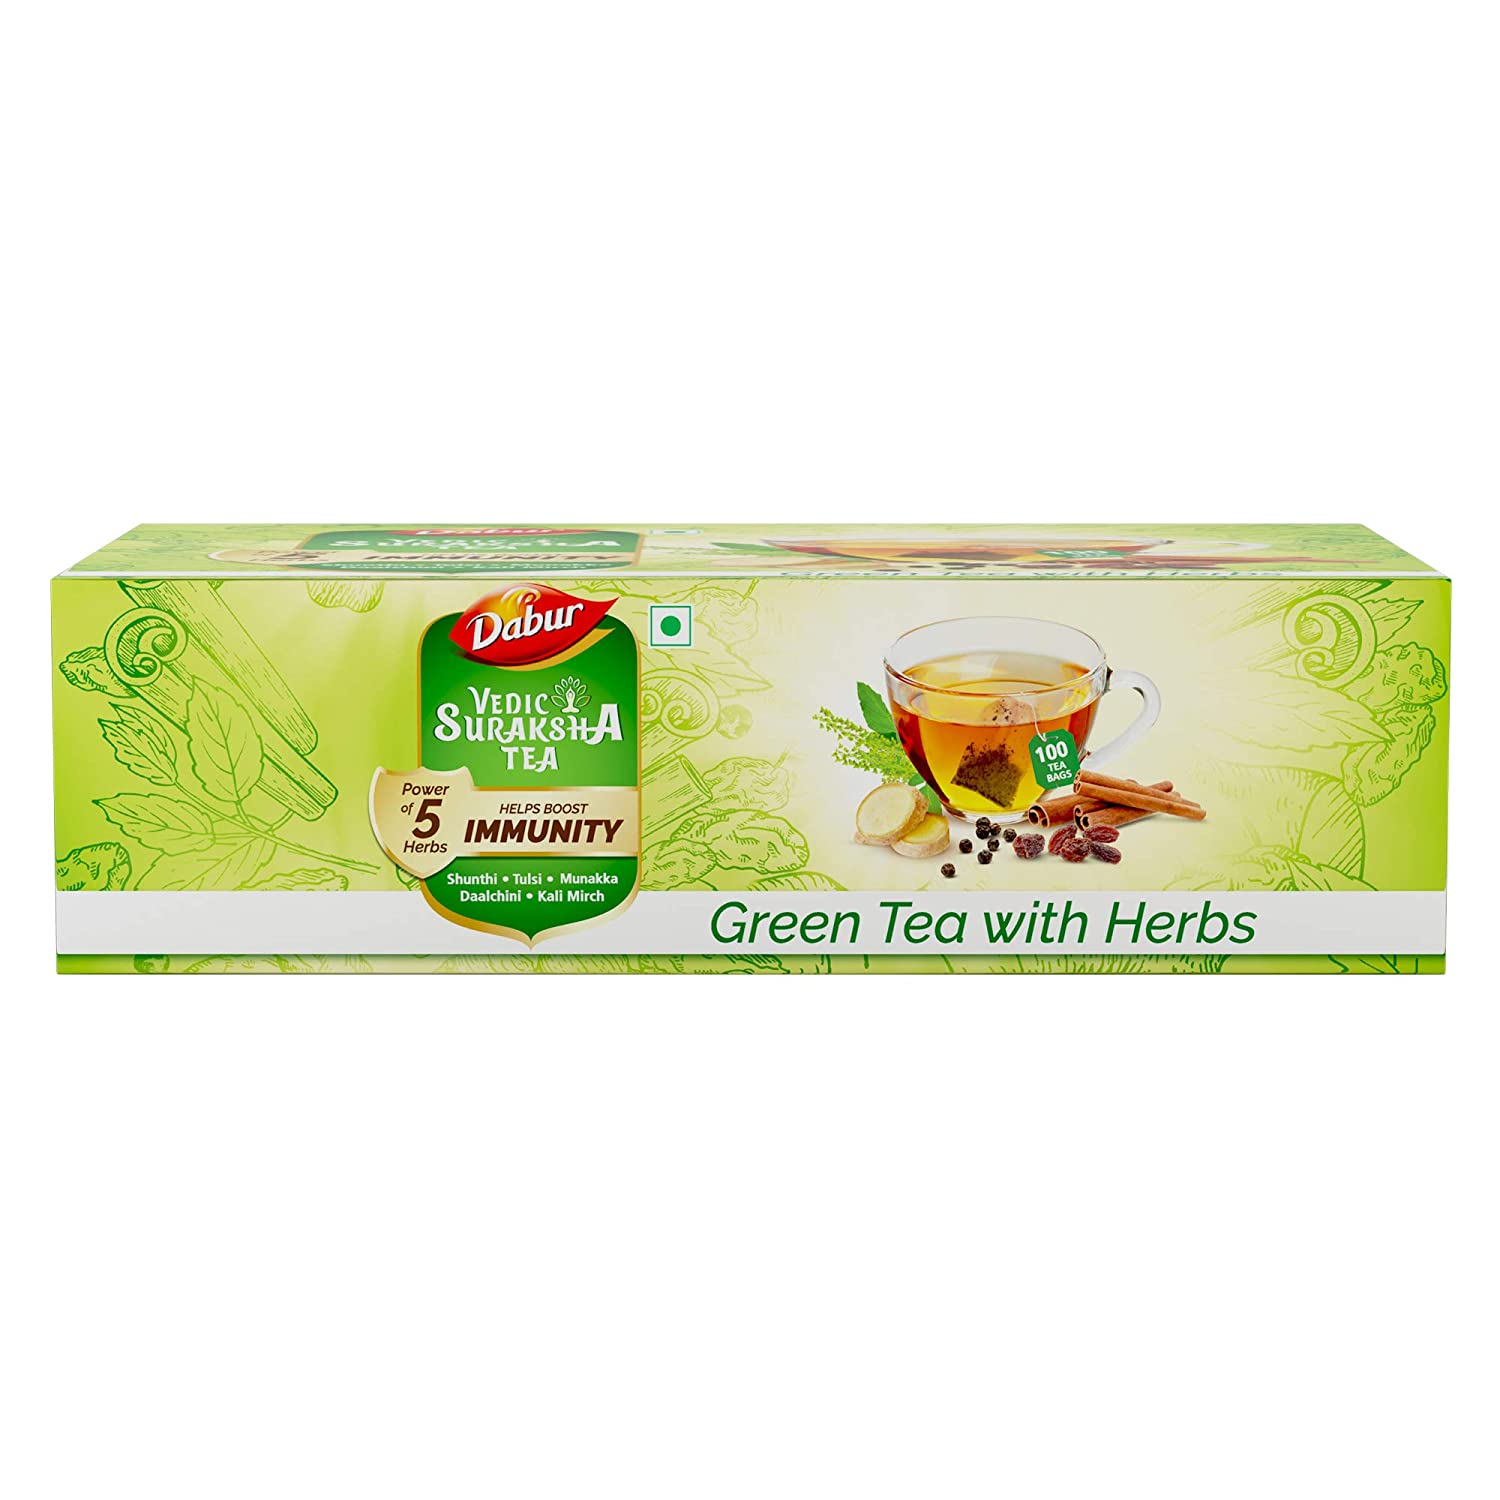 वजन कम करना है तो जरूर पीयें ये Organic Tea, एमेजॉन पर मिल रही है बेहद सस्ती